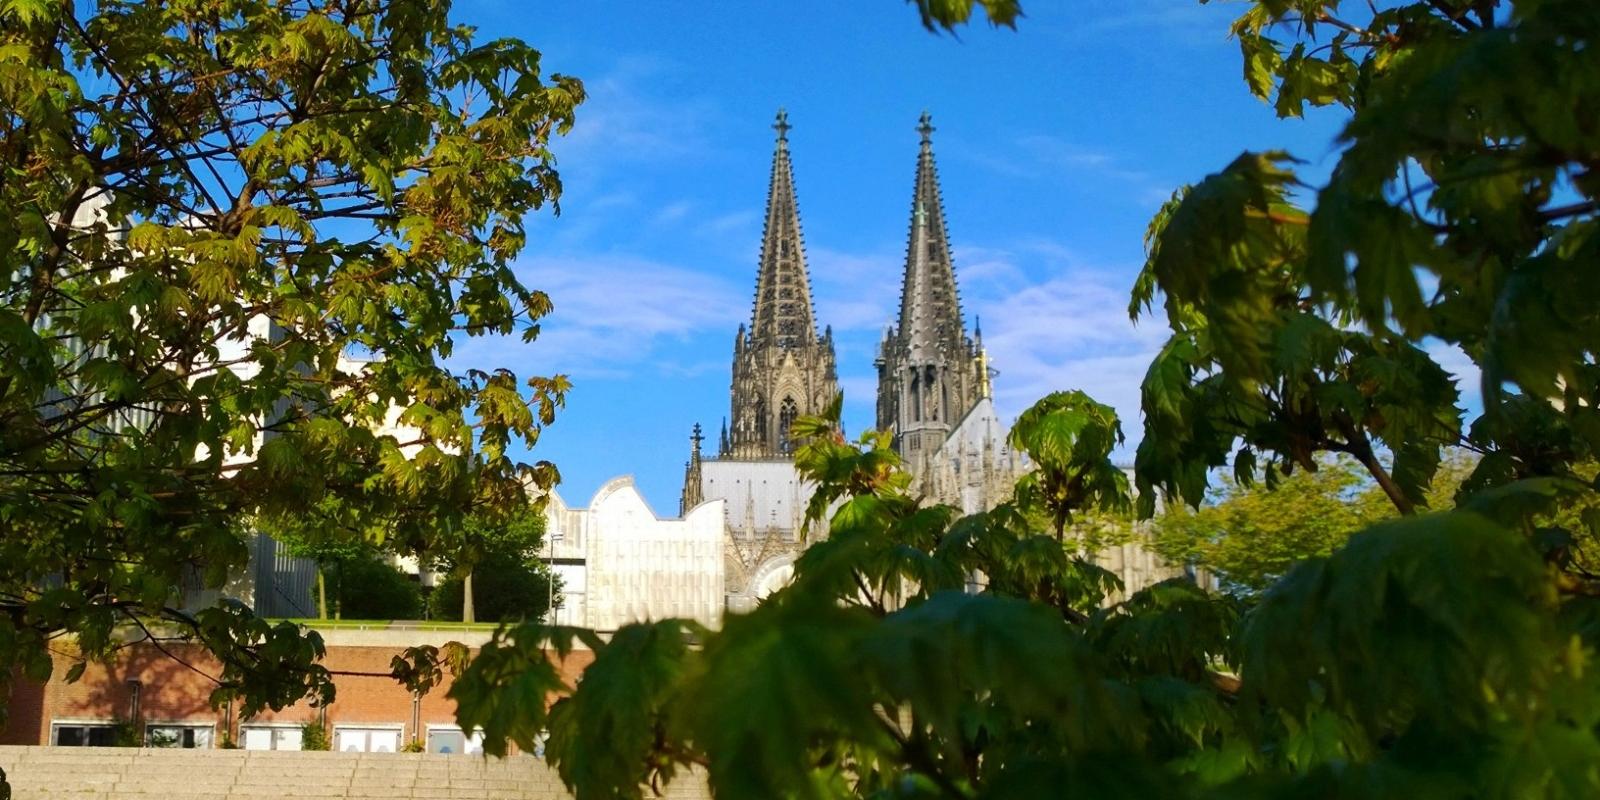 Der Kölner Dom zählt zu den weltweit größten Kathedralen im gotischen Baustil. Viele Kunsthistoriker sehen in ihm eine einmalige Harmonisierung sämtlicher Bauelemente und des Schmuckwerks im Stil der spätmittelalterlich-gotischen Architektur verwirklicht. Wichtig zum Verständnis ist die Tatsache, dass der Baubeginn des Kölner Doms zwar ins 13. Jahrhundert fällt (Gotik), der Dom aber erst im 19. Jahrhundert nach jahrhundertelangem Baustopp vollendet wurde (Neugotik). Die charakteristische Doppelturmfront ist somit weitgehend ein Werk des industrialisierten 19. Jahrhunderts, gleichwohl gestaltet nach den 1814 wieder aufgefundenen Plänen, die ein Abbild der vorgesehenen Westfassade zeigen. Die mittelalterliche Gotik hat nur zwei bedeutende Kirchtürme dieser durchbrochenen Bauart hervorgebracht: Straßburg und Freiburg. Alle anderen ähnlichen Türme wie beispielsweise in Ulm oder Regensburg sind Werke der Neugotik des 19. Jahrhunderts. Ex-Bild-DB-ID: 24407